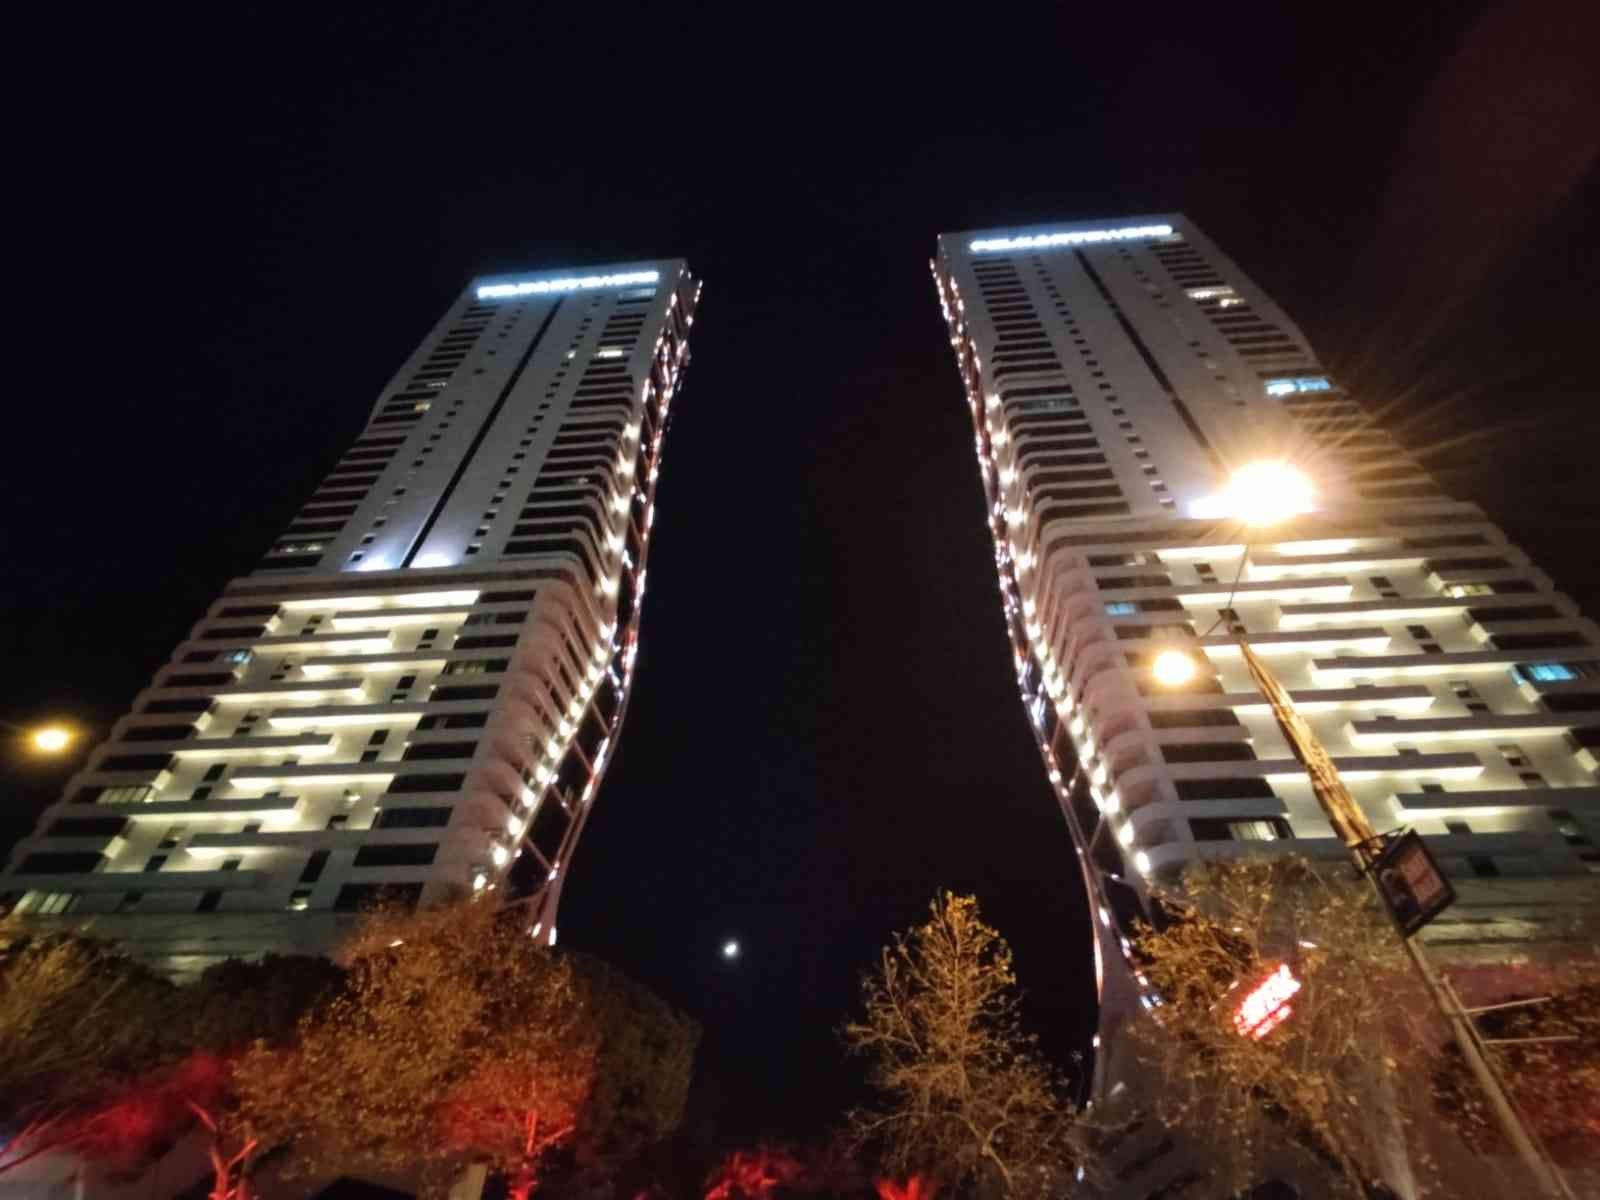 İzmir’de ikiz kulelerde yangın paniği: 3 yaralı #izmir